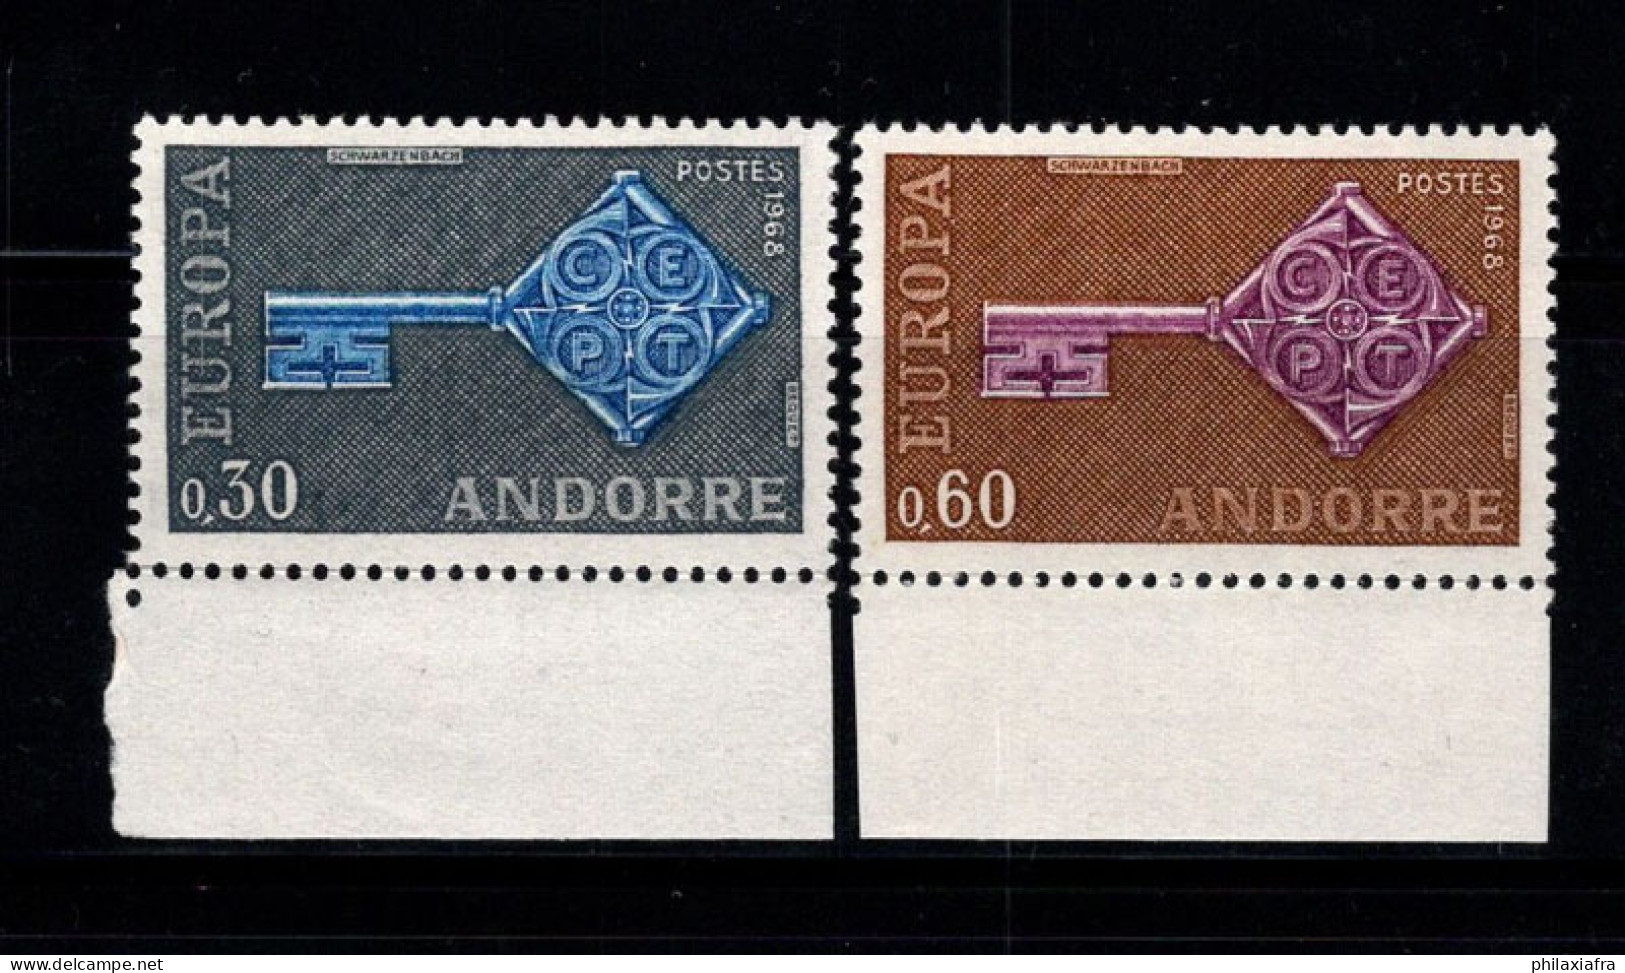 Europe 1968 Neuf ** 100% CEPT, Andorre Français - 1968